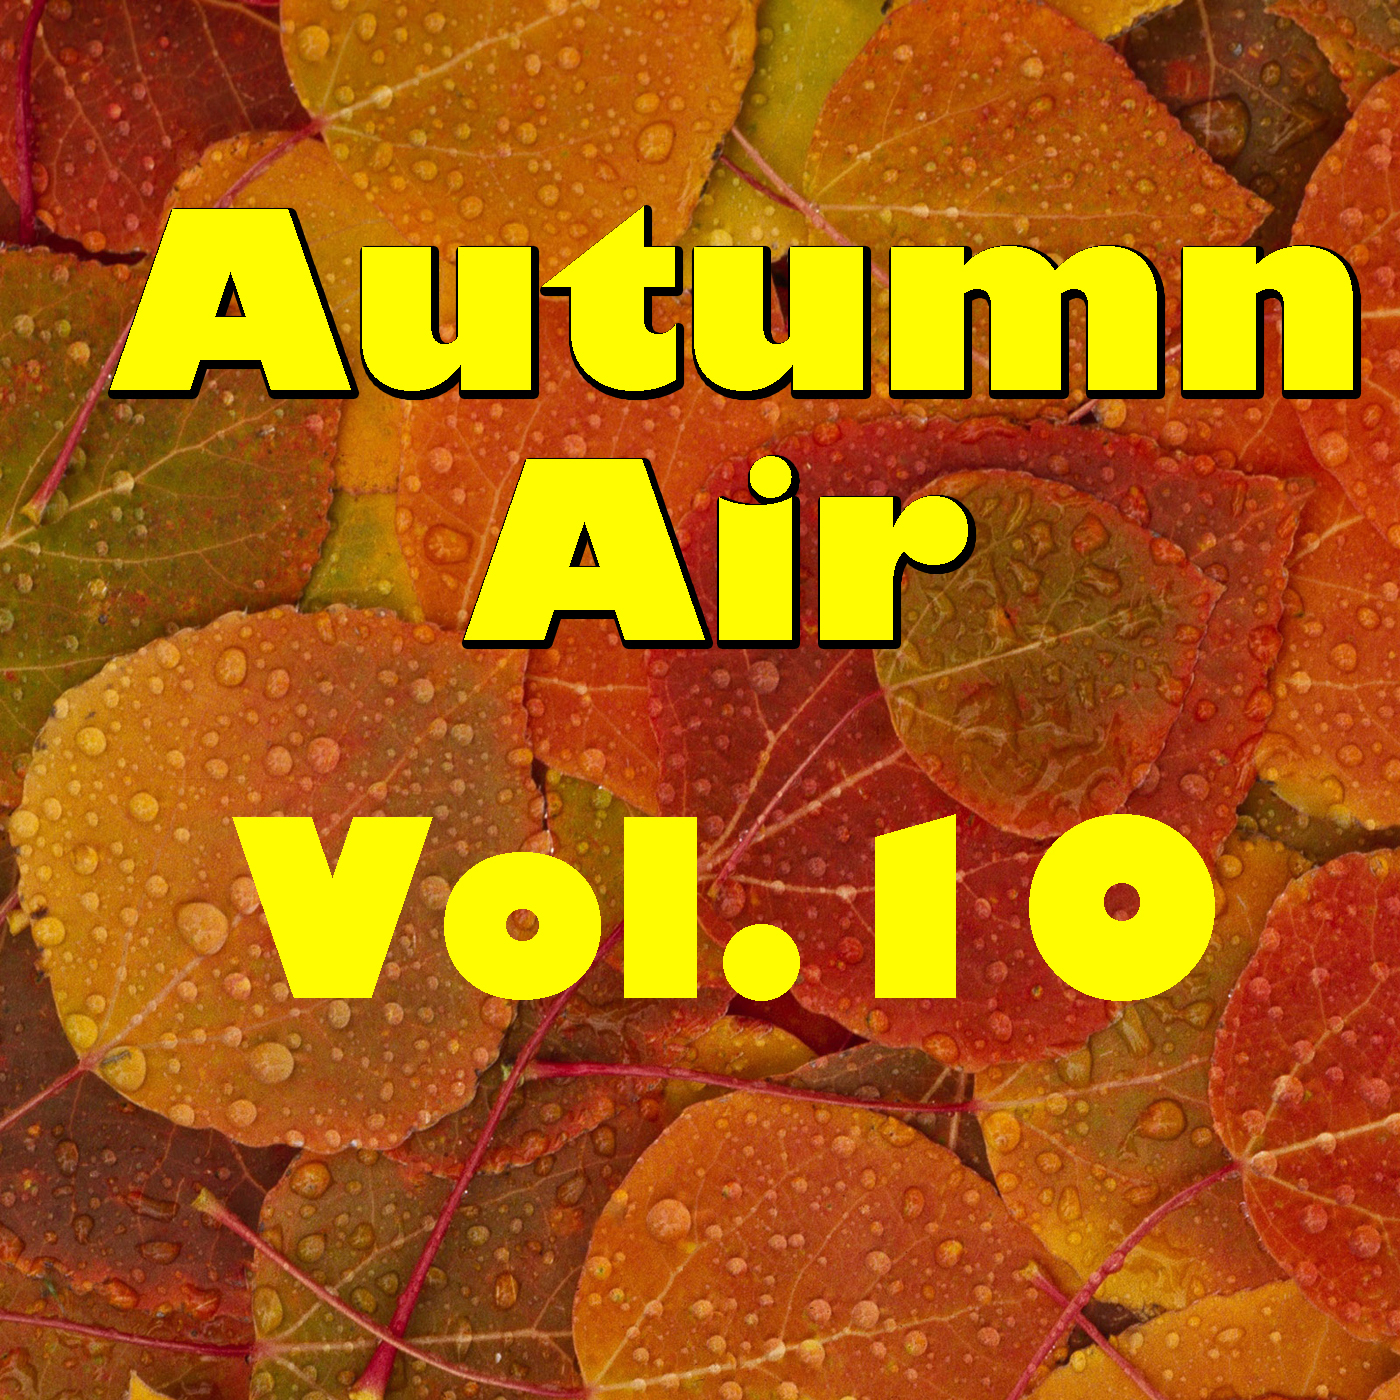 Autumn Air, Vol.10